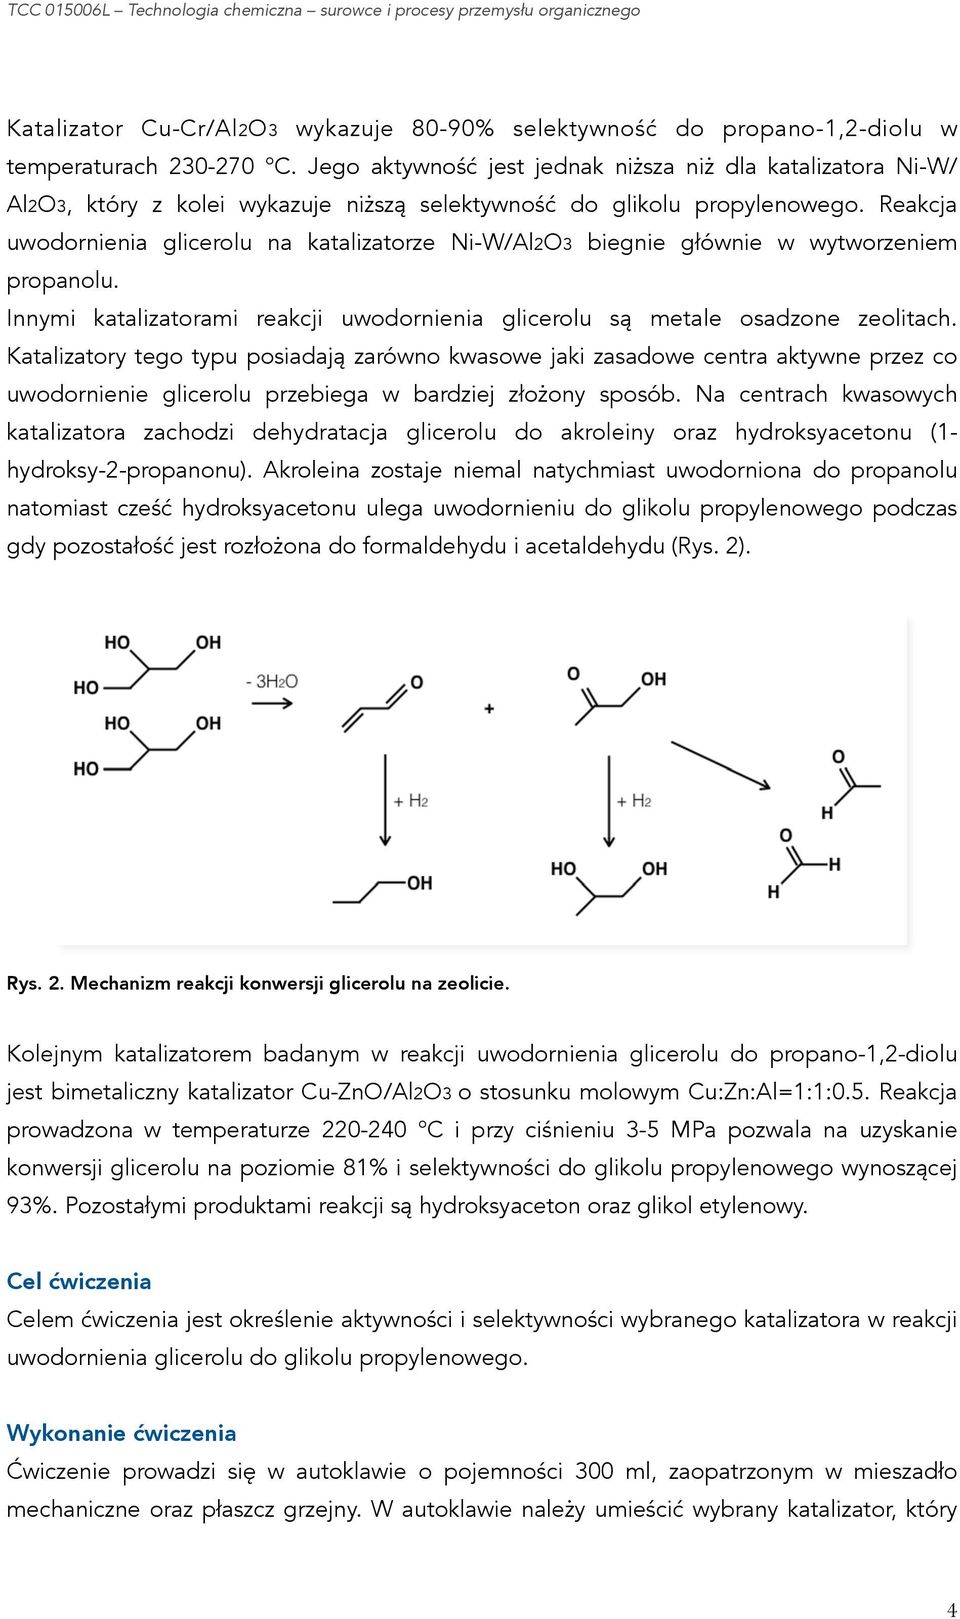 Reakcja uwodornienia glicerolu na katalizatorze Ni-W/Al2O3 biegnie głównie w wytworzeniem propanolu. Innymi katalizatorami reakcji uwodornienia glicerolu są metale osadzone zeolitach.